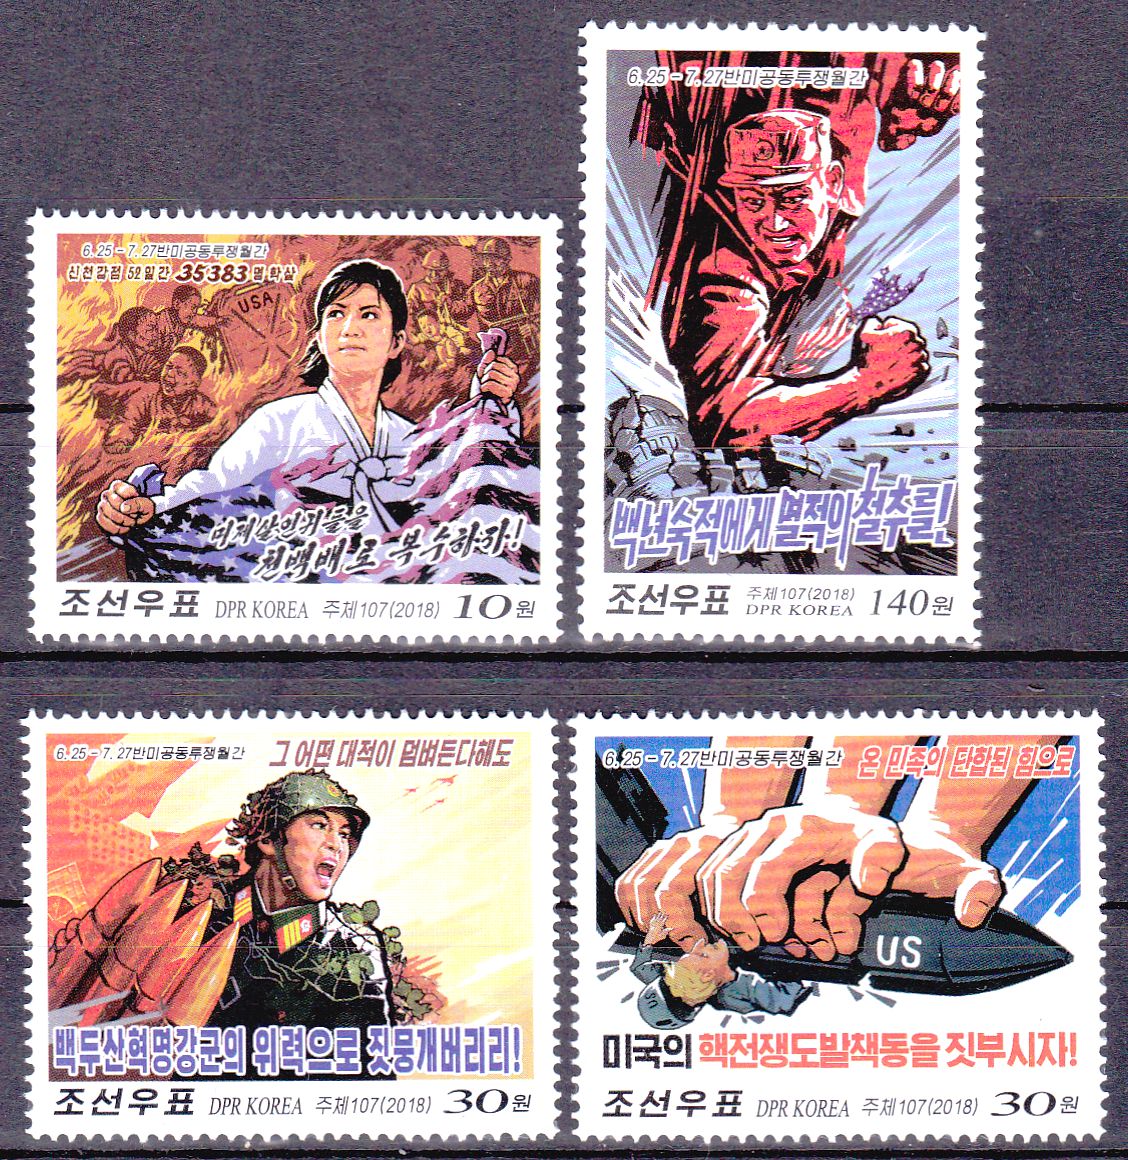 L4501, Korea Anti-USA Joint Struggle (Last Set), 4 Pcs Stamps, 2018